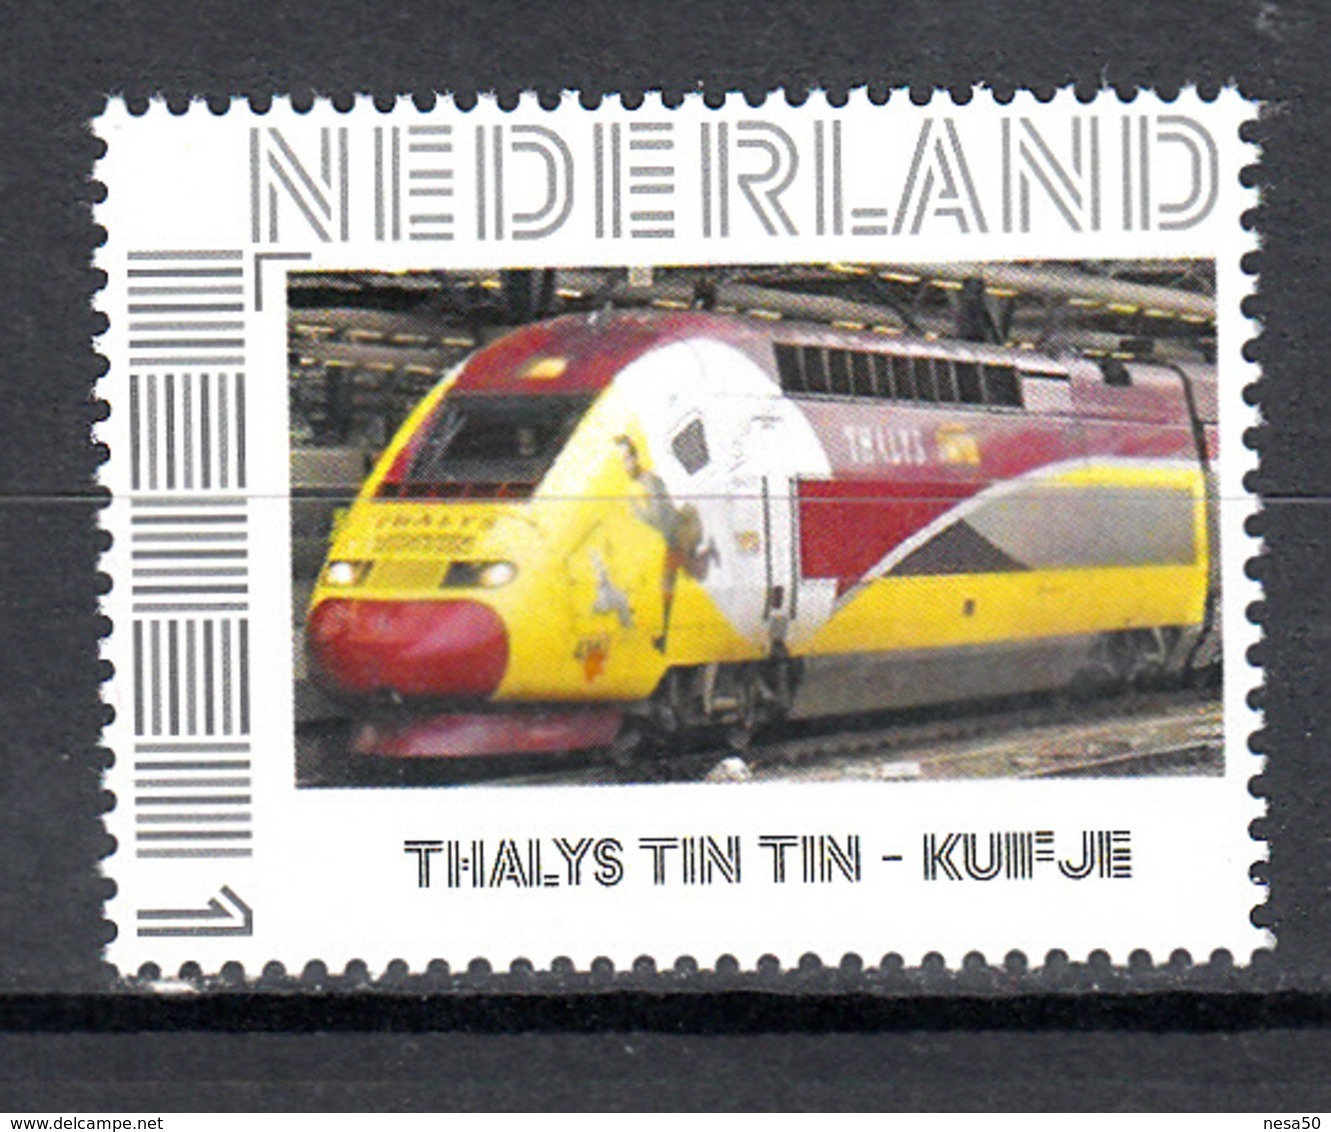 Trein, Train, Eisenbahn, Nederland Persoonlijke Zegel: Thalys, Kuifje, Tin Tin - Treinen